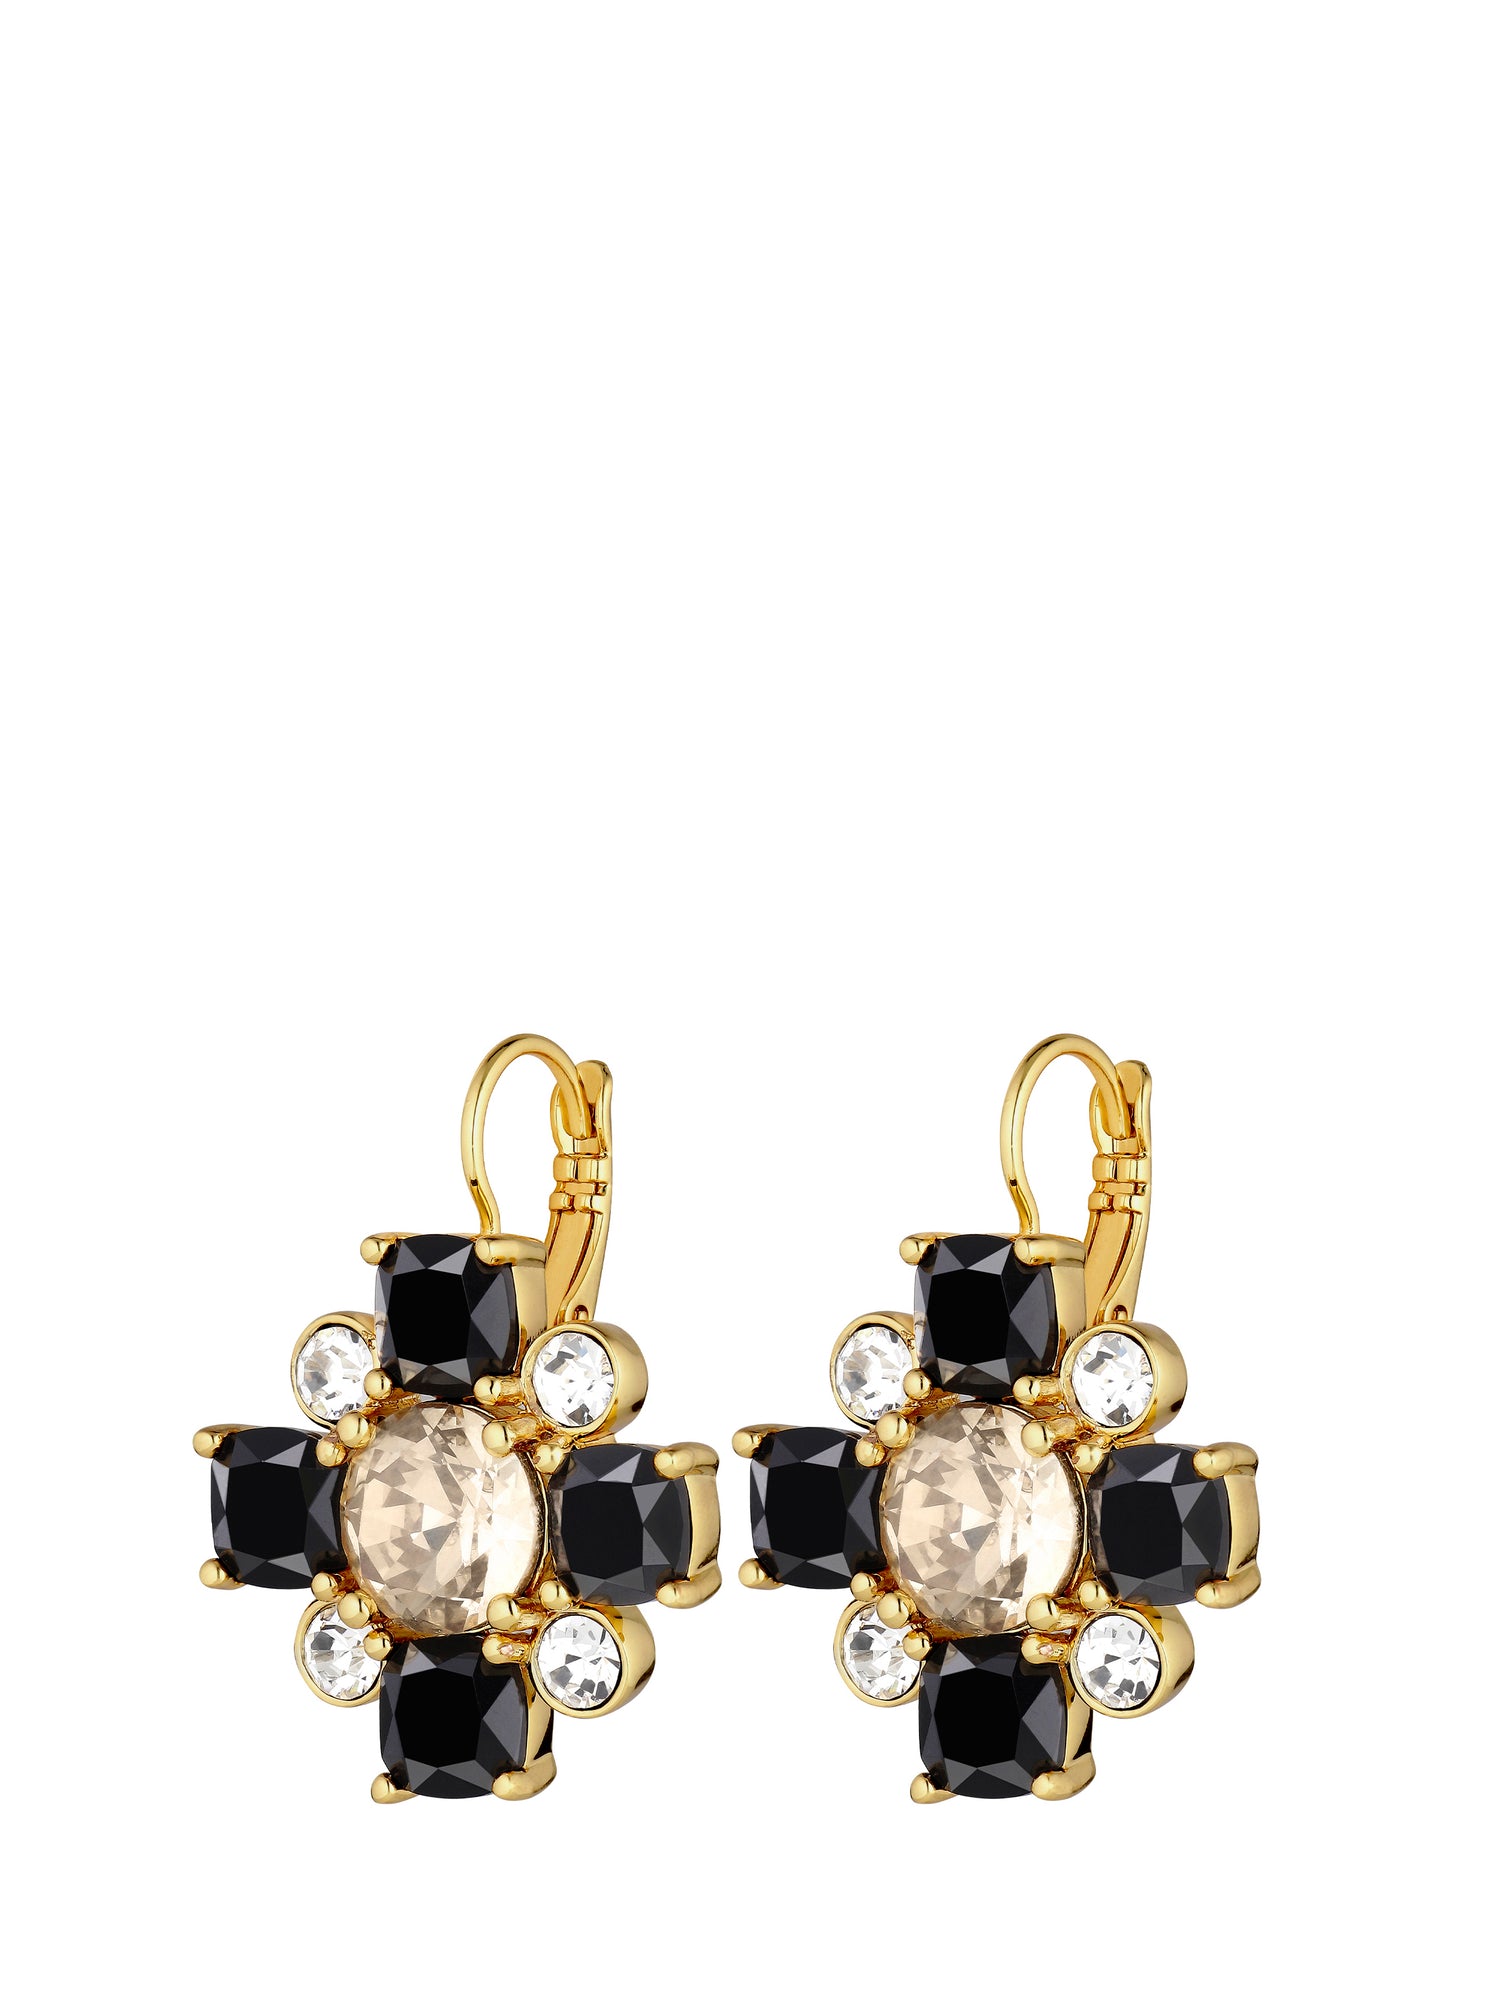 BATTI earrings, gold-black